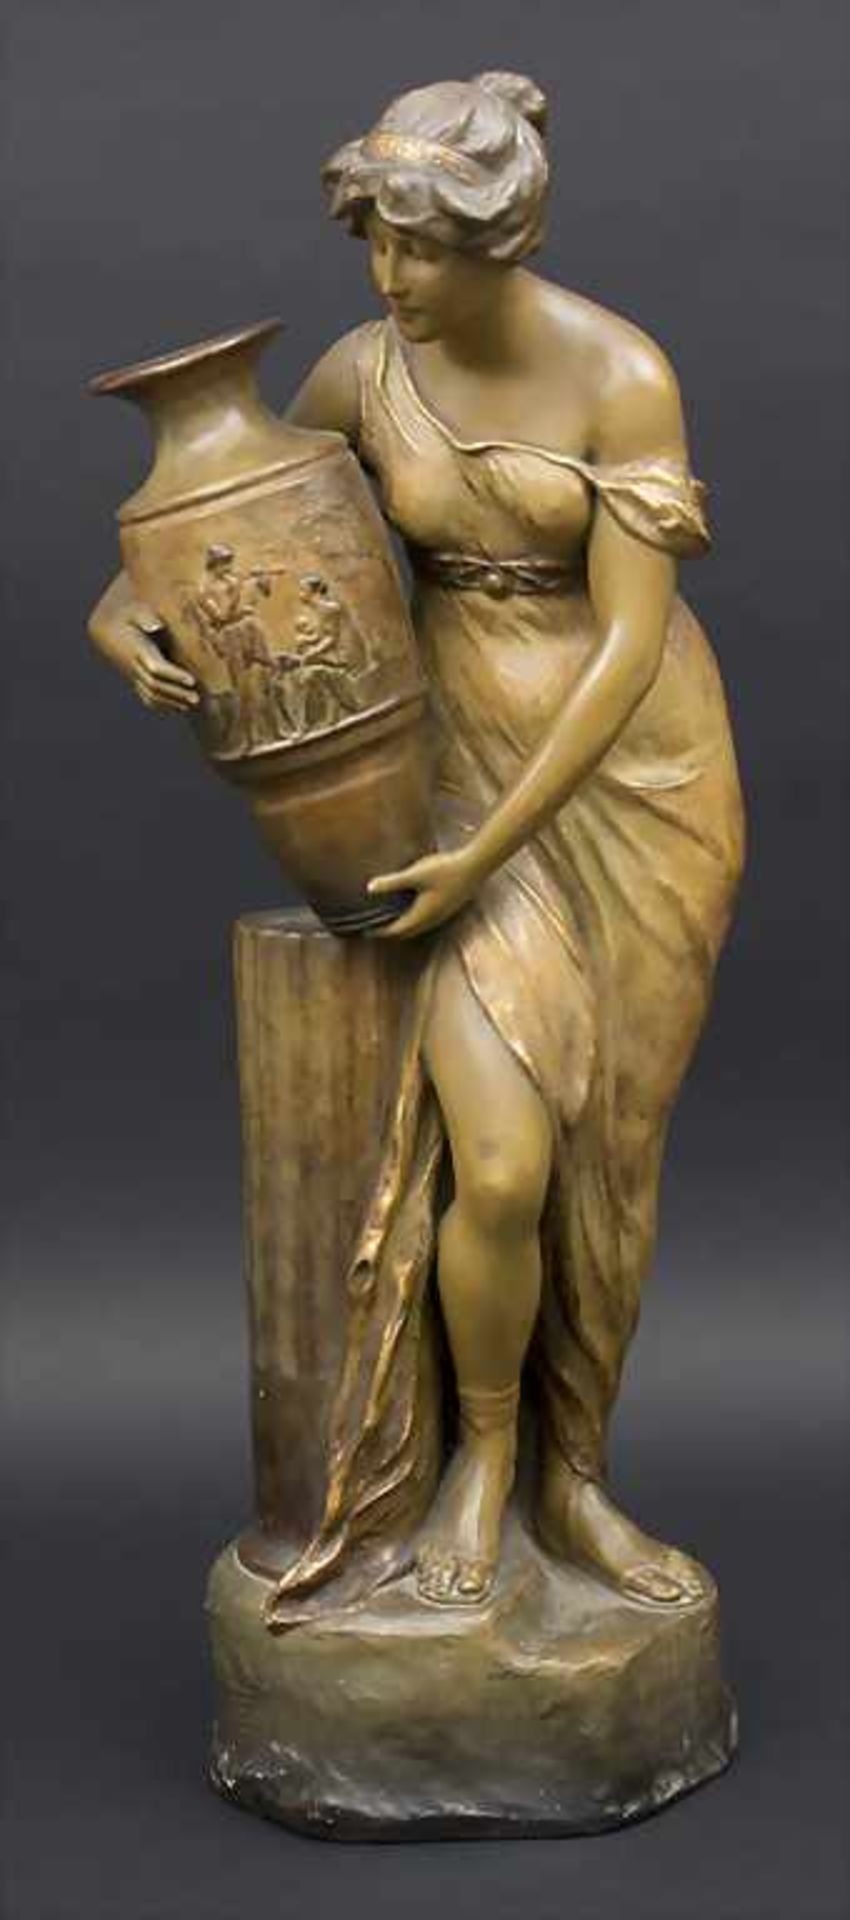 Jugendstil-Figur 'Rebecca' / An Art Nouveau figure of Rebecca, Goldscheider, Wien / Vienna, um